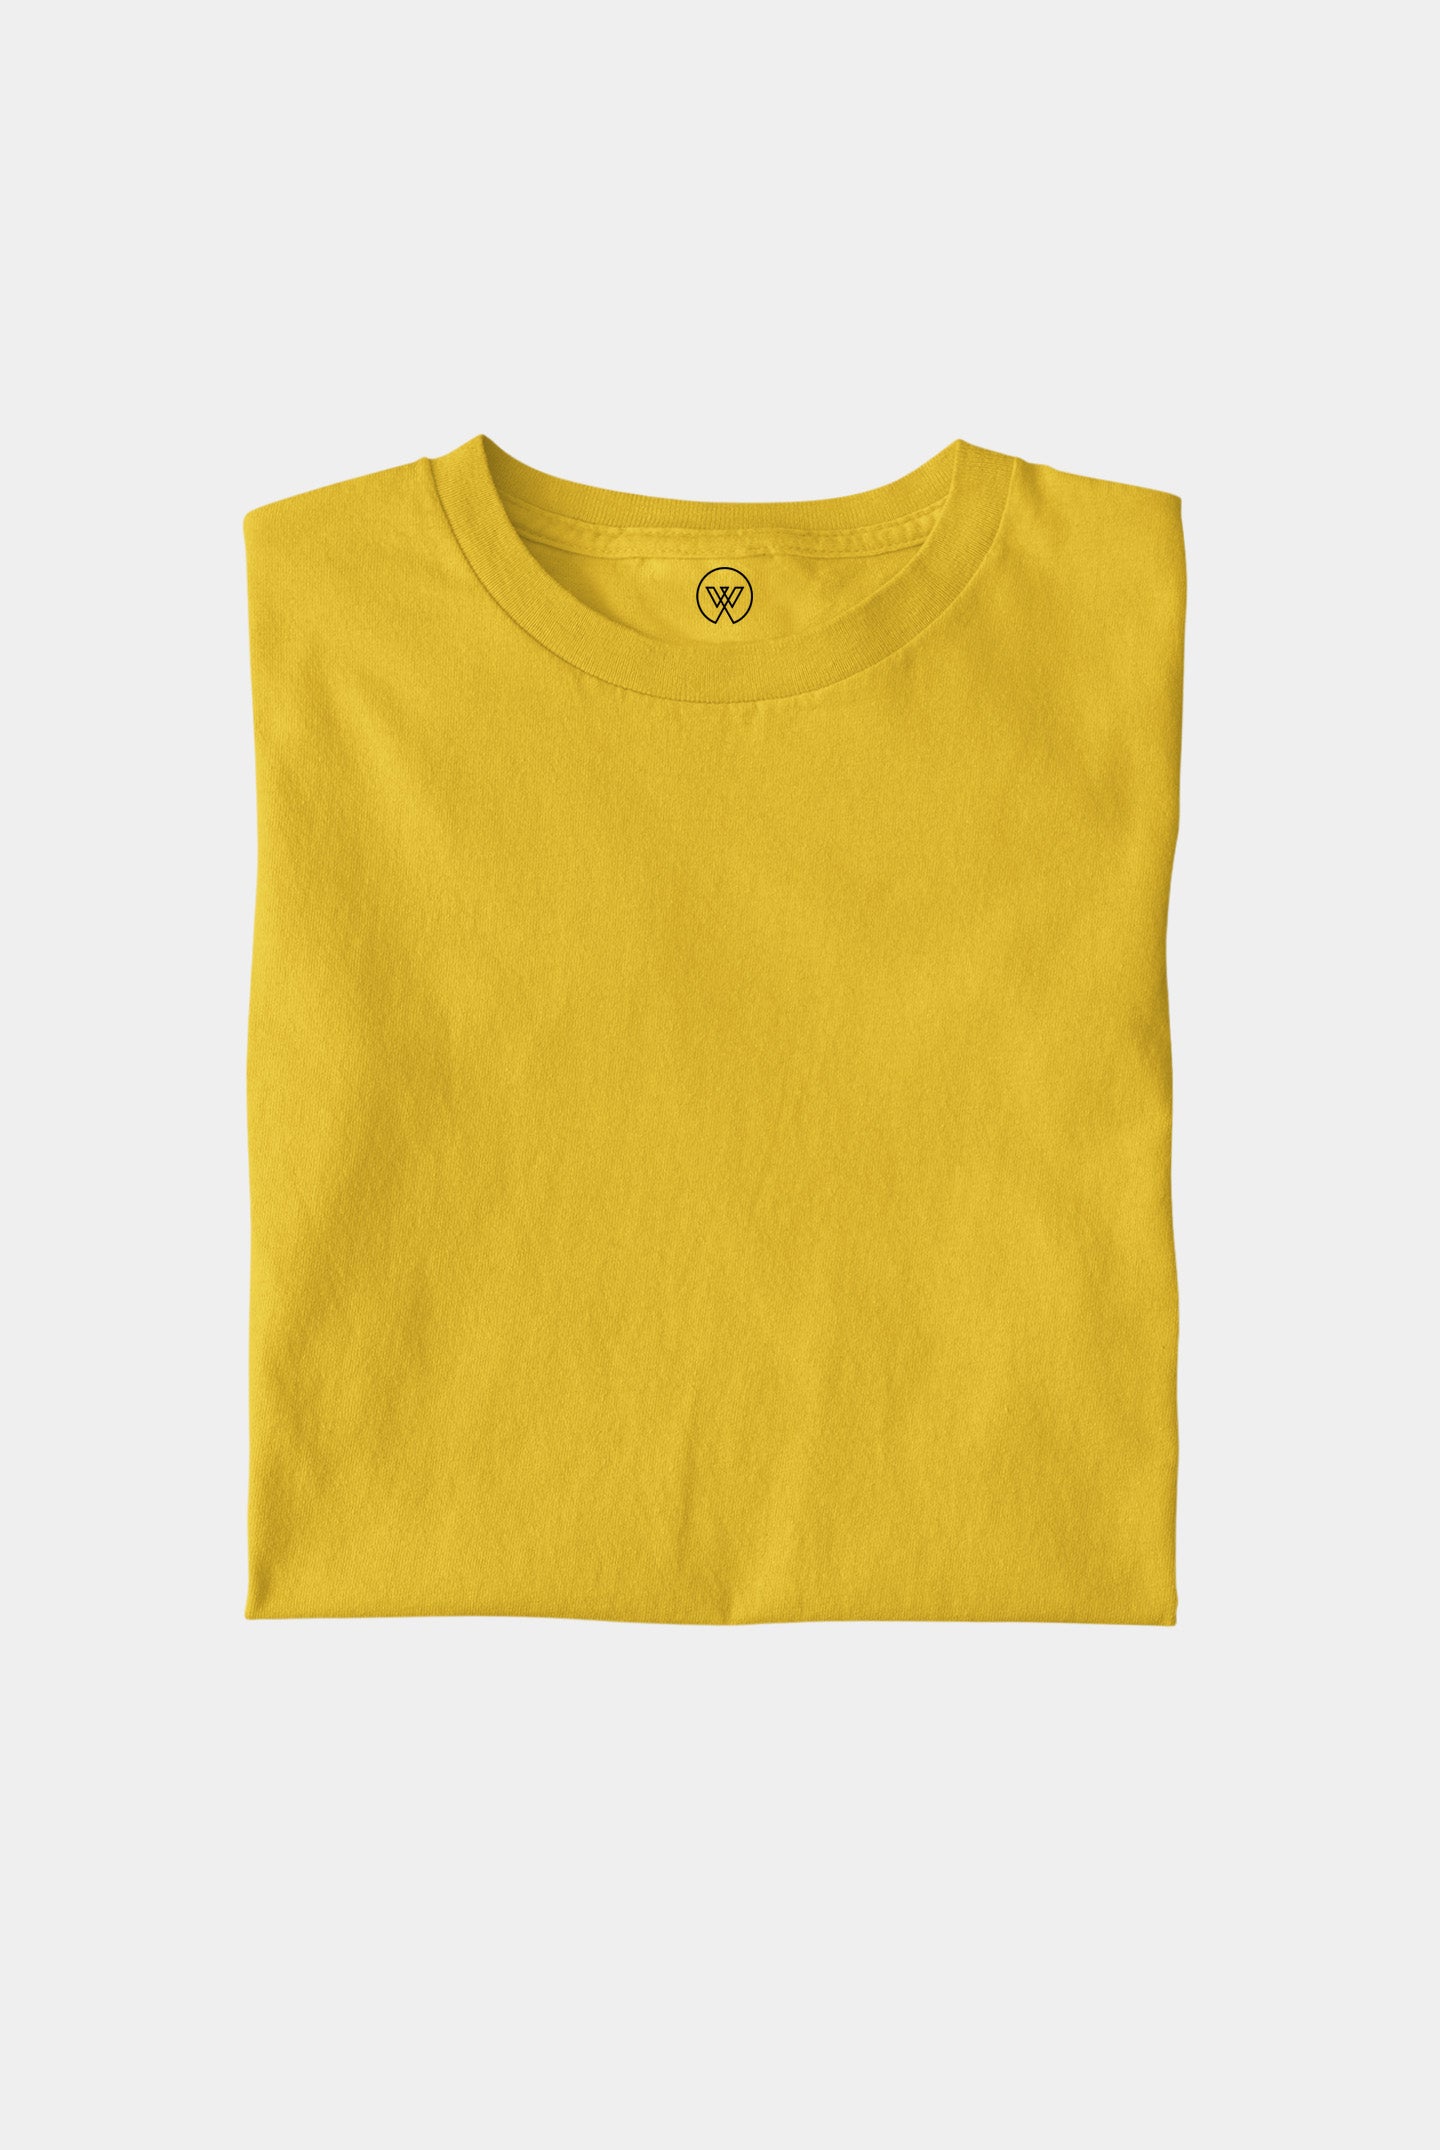 Mustard Yellow Unisex T-shirt